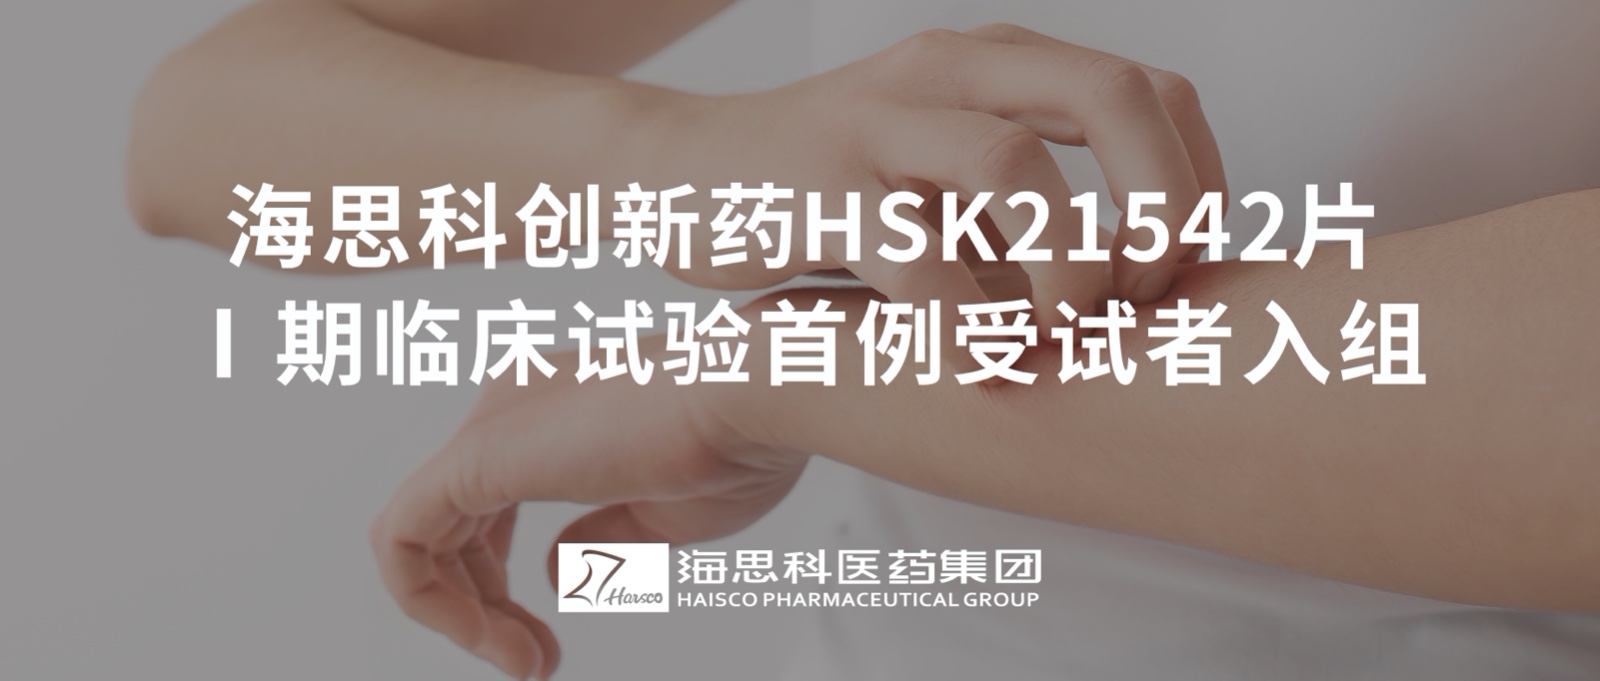 8797威尼斯老品牌创新药HSK21542片Ⅰ期临床试验首例受试者入组